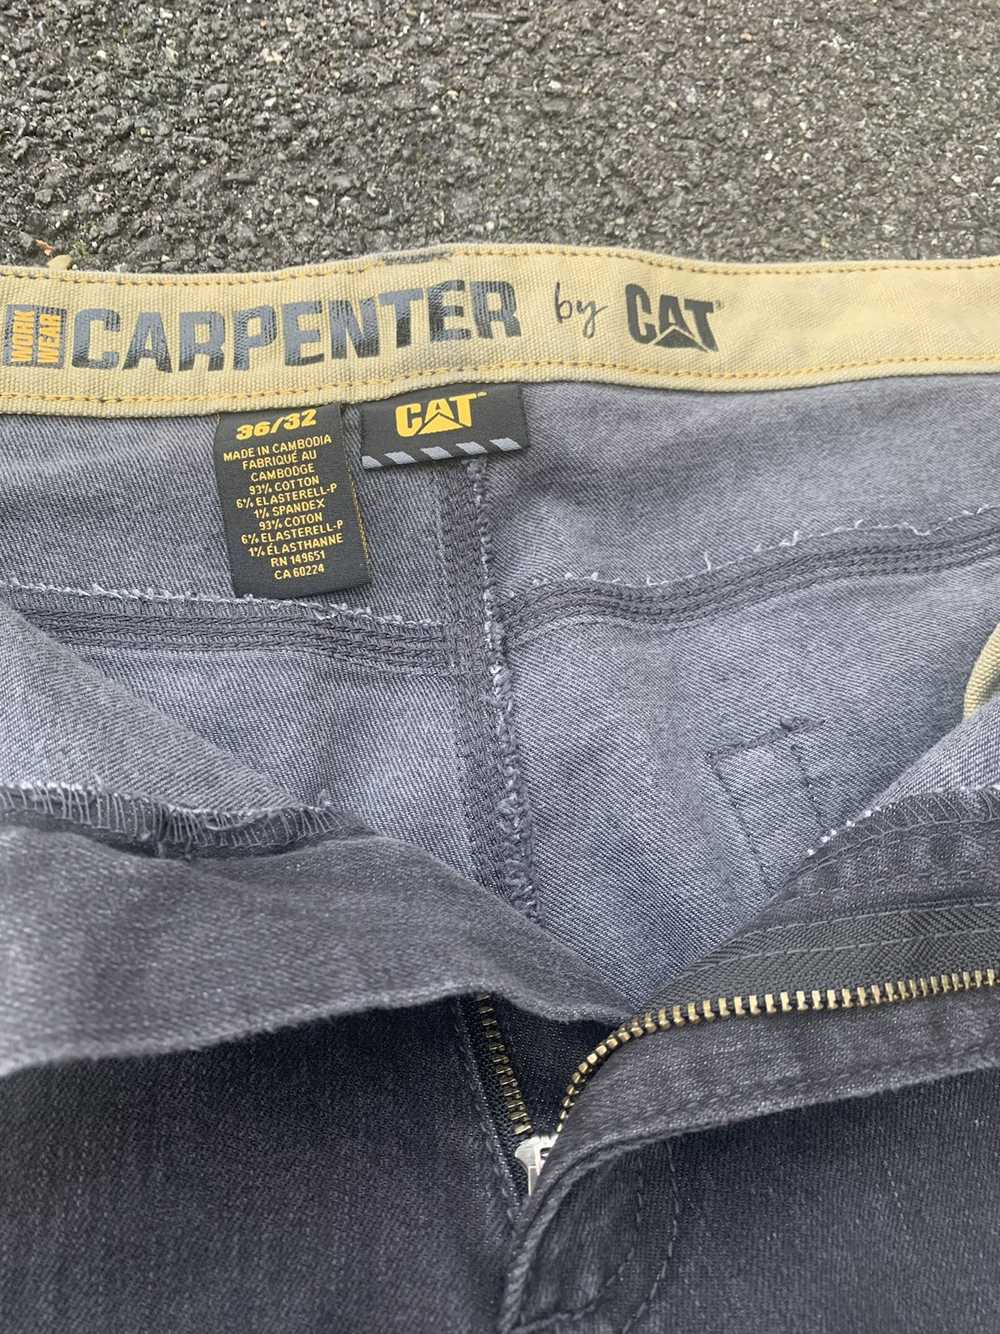 Caterpillar × Vintage caterpillar carpenter pants - image 3